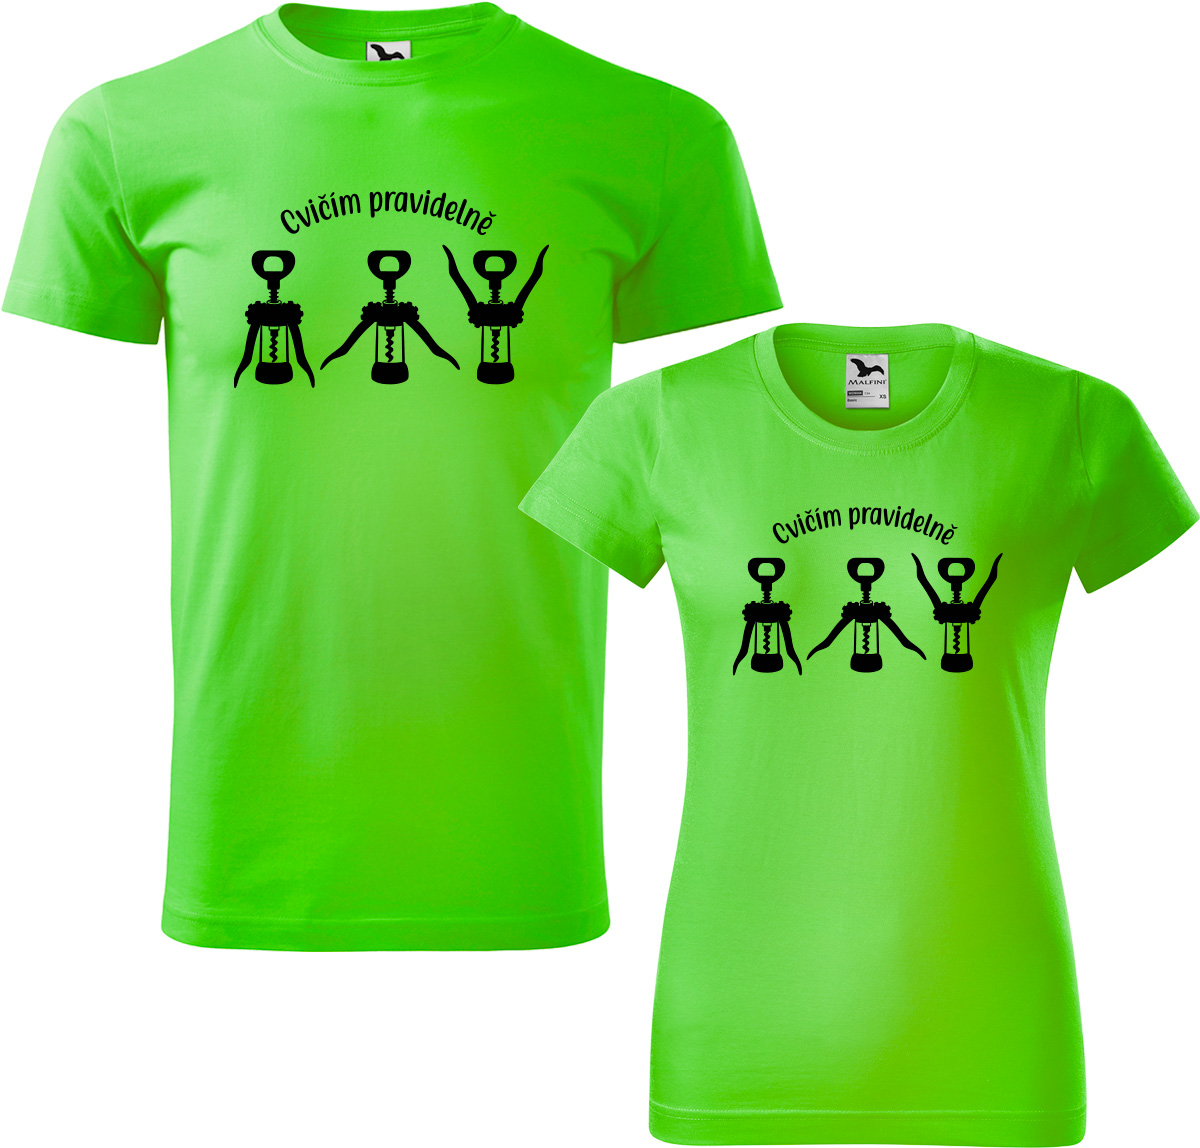 Trička pro páry - Cvičím pravidelně Barva: Apple Green (92), Velikost dámské tričko: S, Velikost pánské tričko: XL